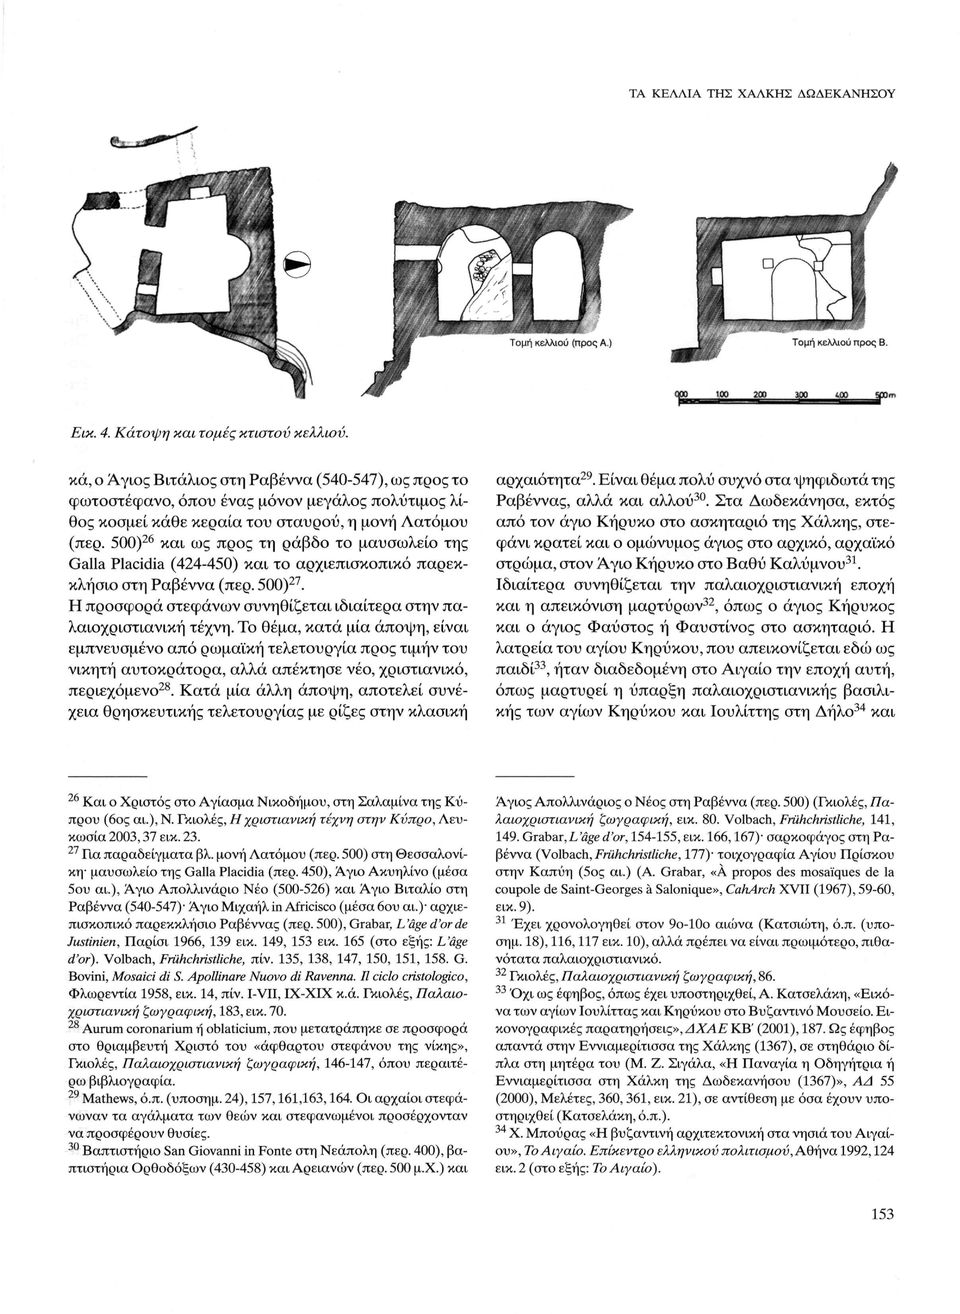 500) 26 και ως προς τη ράβδο το μαυσωλείο της Galla Placidia (424-450) και το αρχιεπισκοπικό παρεκκλήσιο στη Ραβέννα (περ. 500) 27.